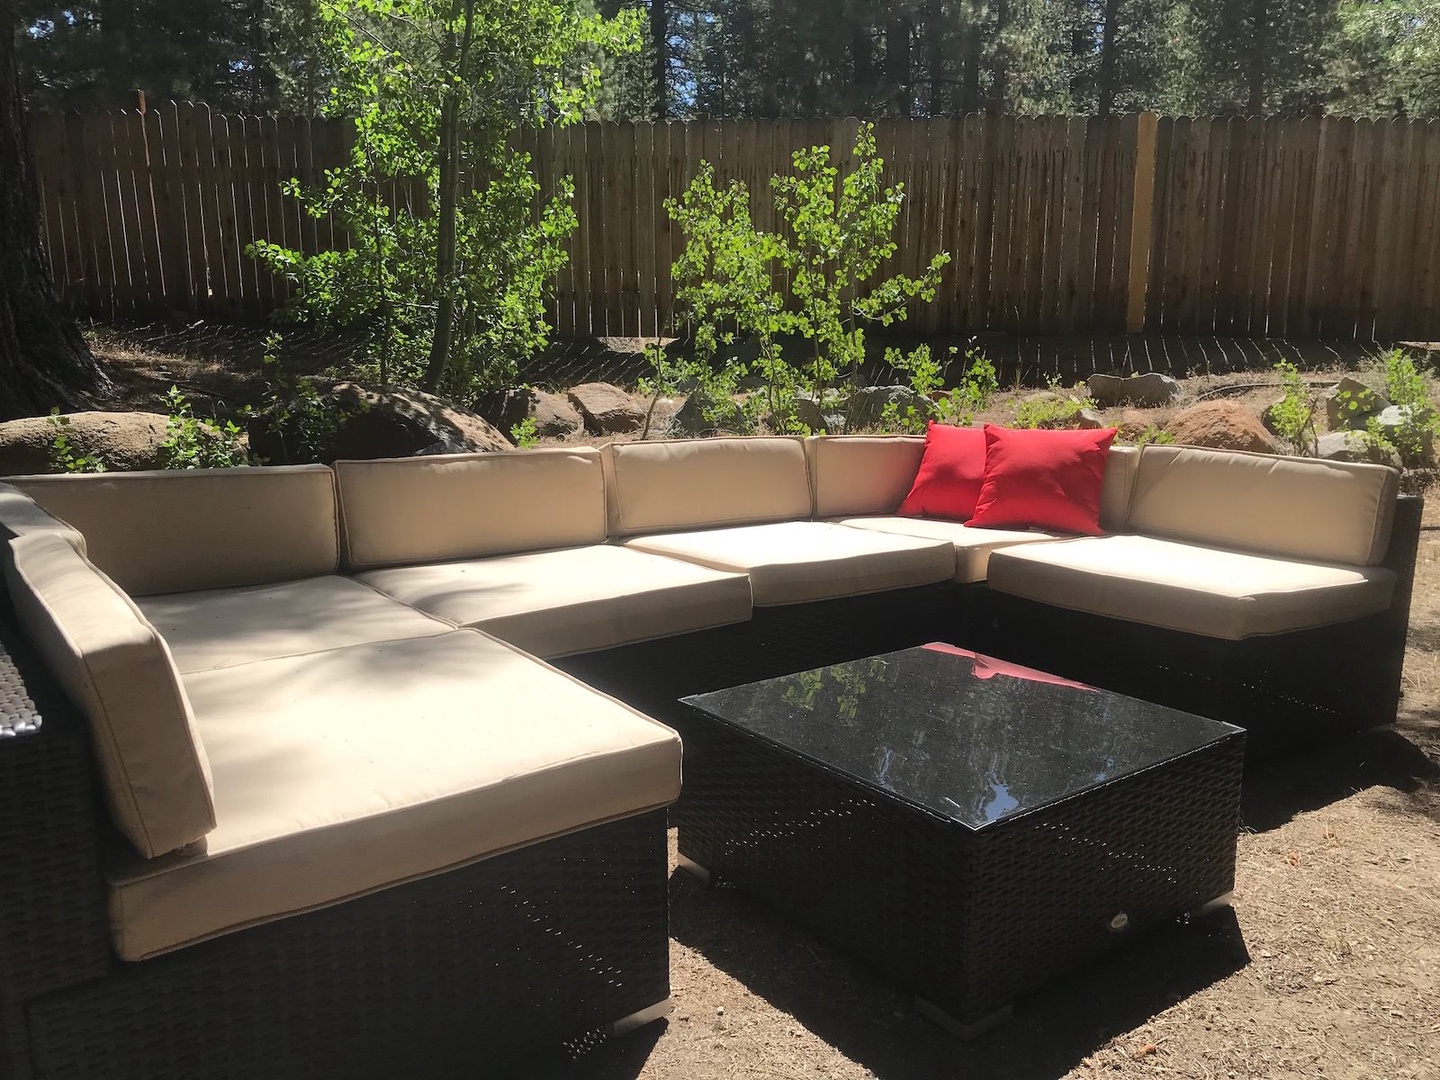 Patio seating in backyard